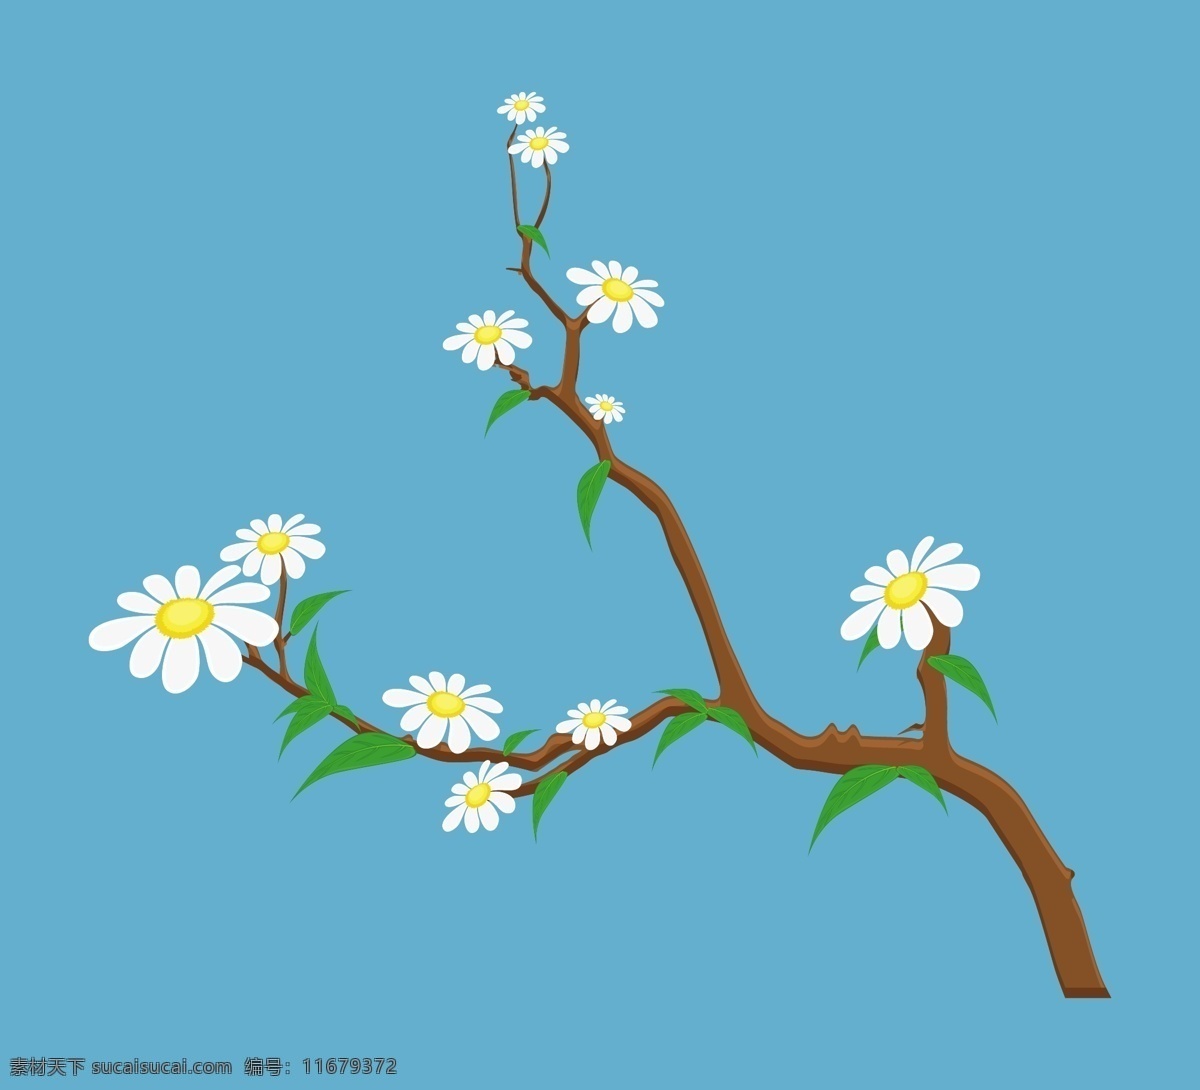 白色 花朵 树枝 青色 天蓝色